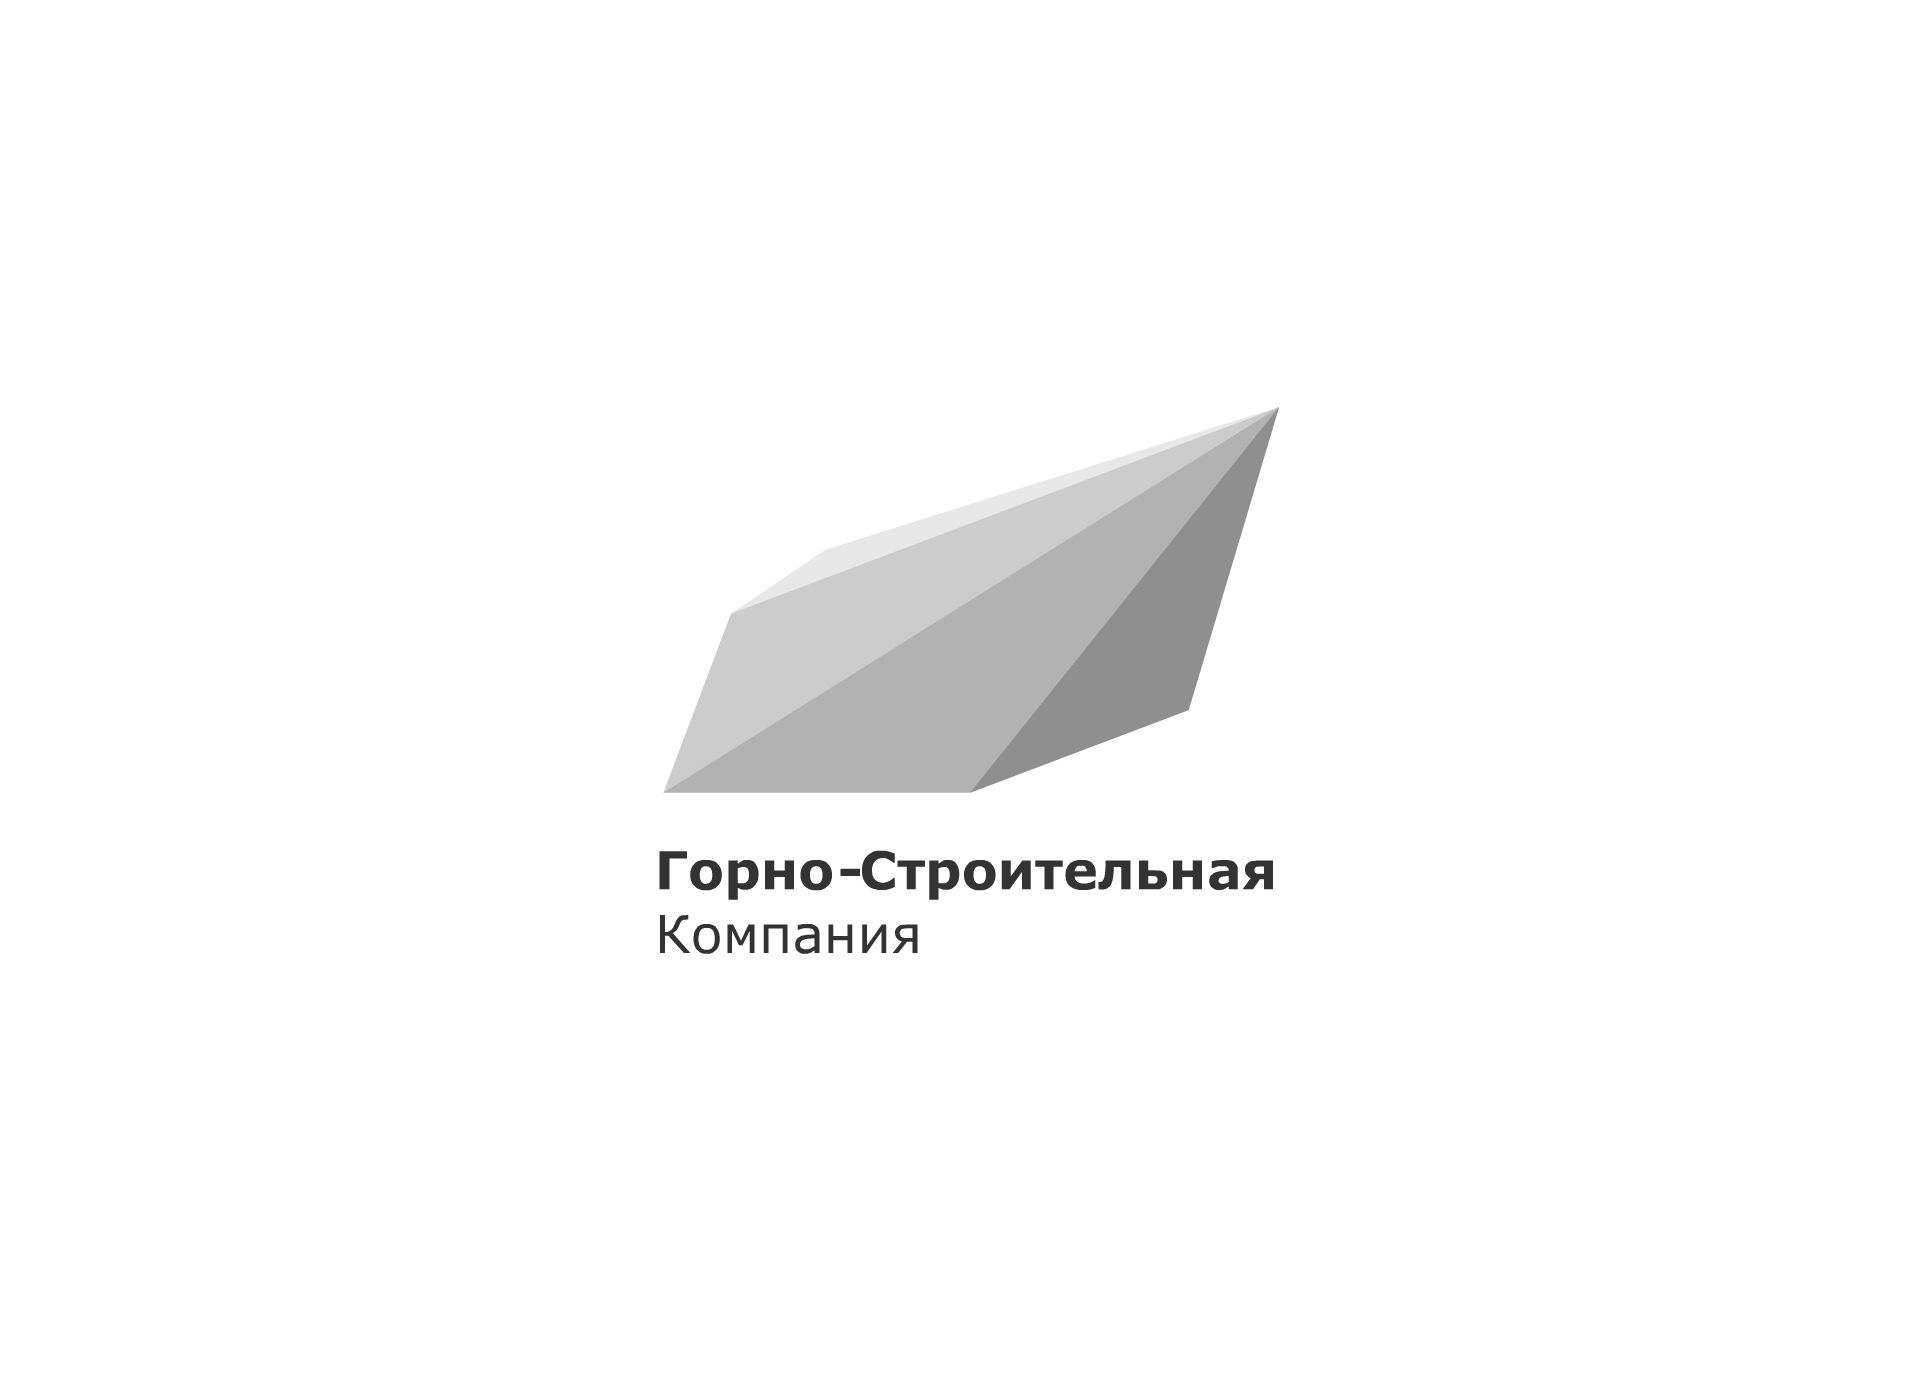 Логотип для Горно-Строительной Компании - дизайнер mrTuzzz